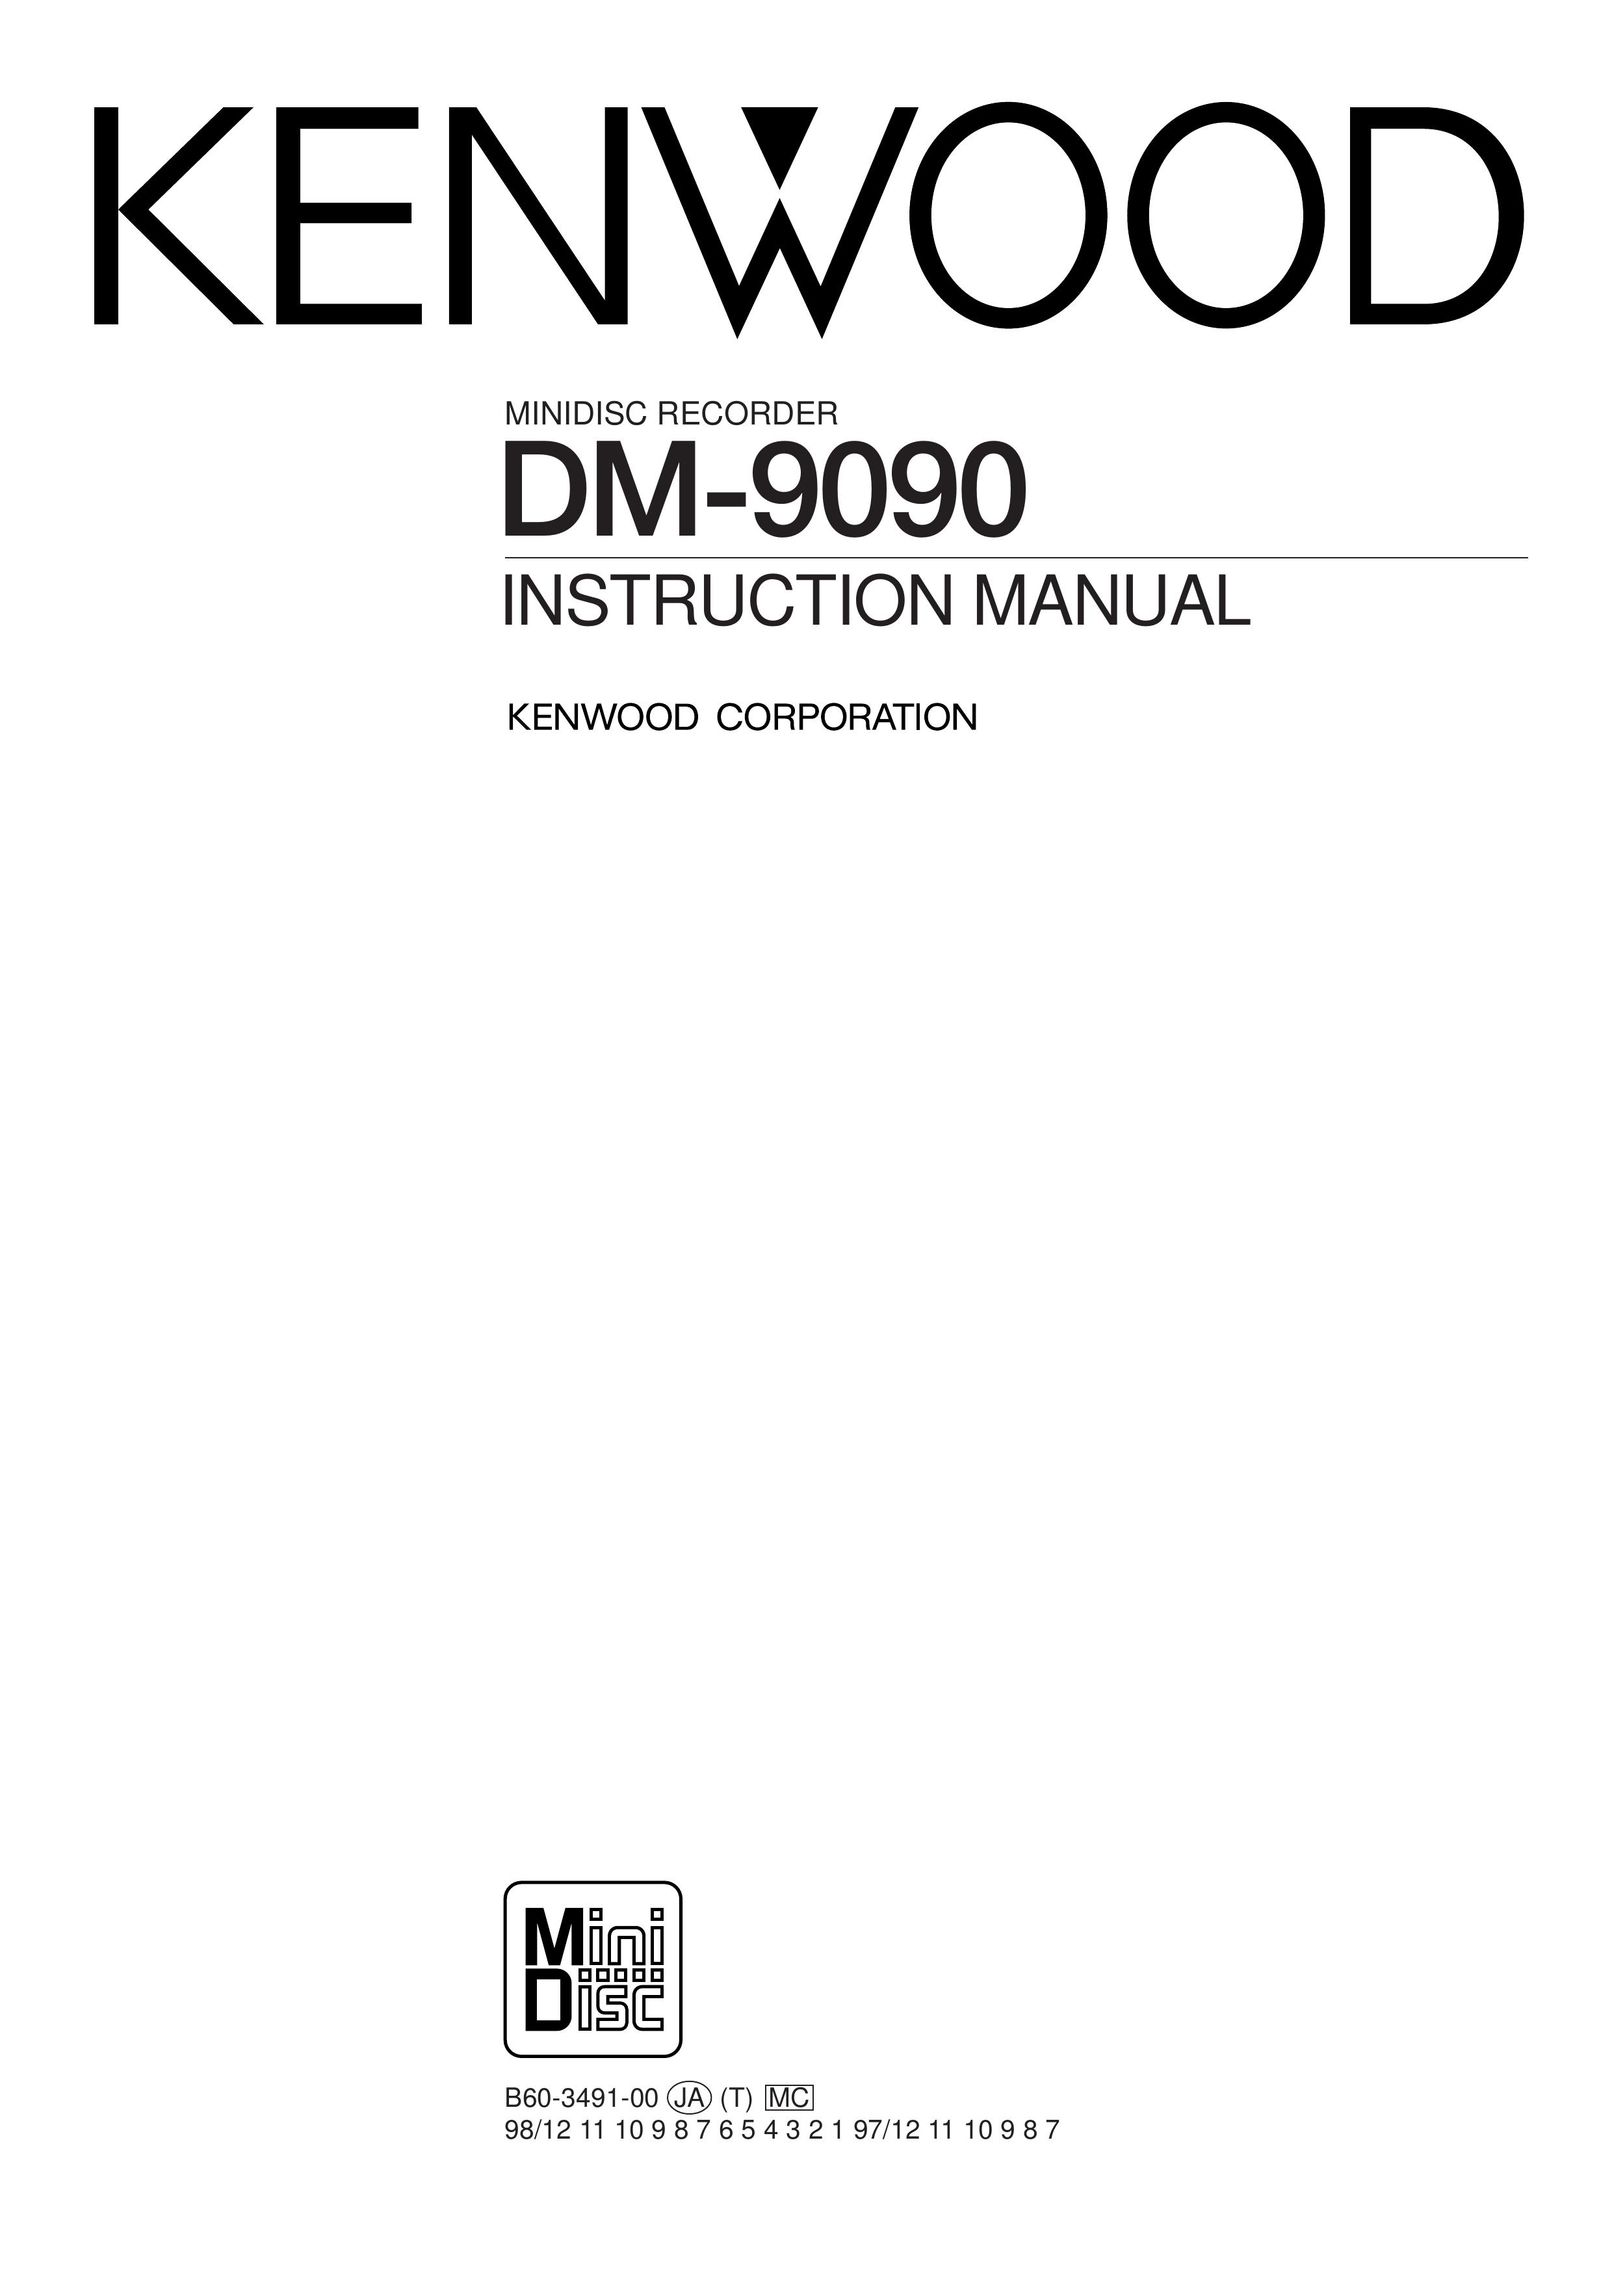 Kenwood DM-9090 DVD Recorder User Manual